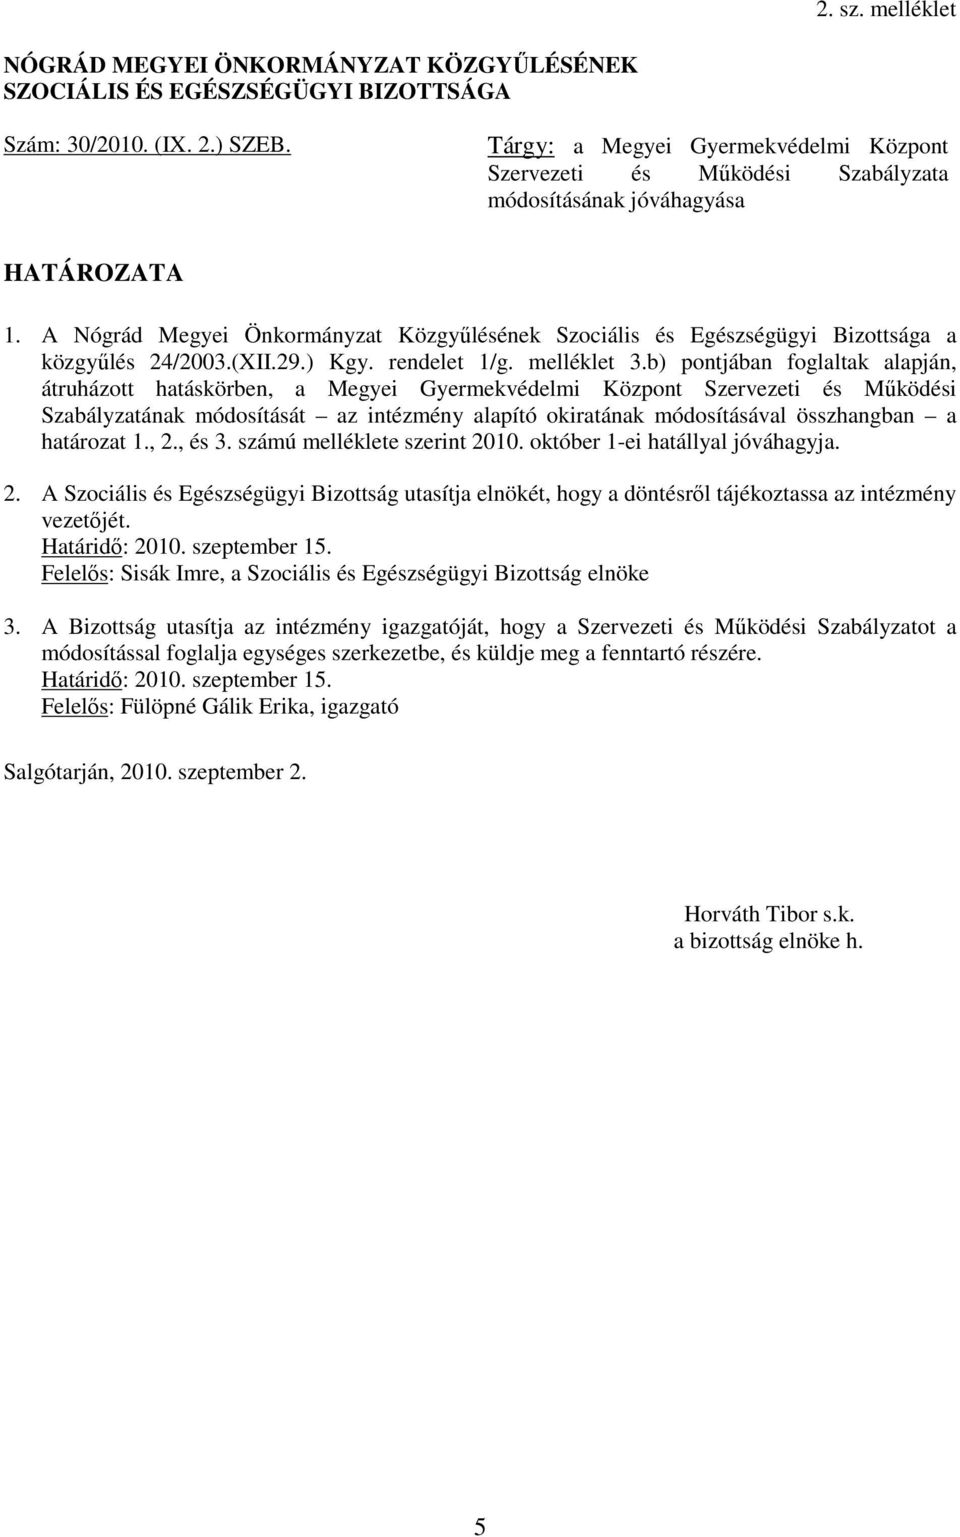 A Nógrád Megyei Önkormányzat Közgyűlésének Szociális és Egészségügyi Bizottsága a közgyűlés 24/2003.(XII.29.) Kgy. rendelet 1/g. melléklet 3.